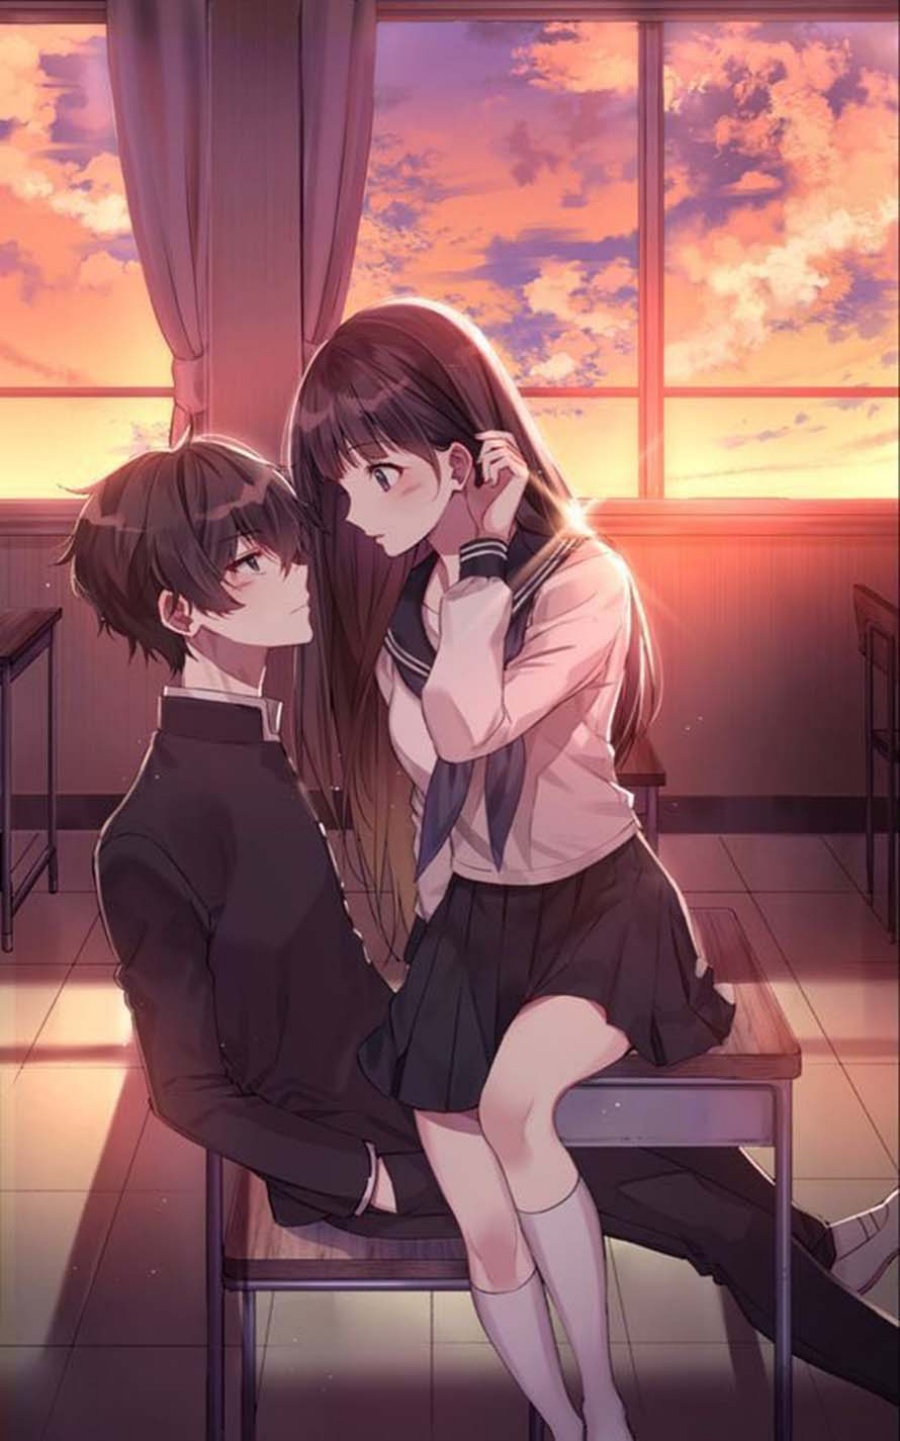 Xem ngay ảnh cặp đôi yêu nhau trong phong cách Anime, sự ngọt ngào và tình cảm tuyệt vời sẽ chắc chắn khiến bạn tan chảy. Tưởng tượng mình đóng vai trò là chàng hoặc nàng trong bức ảnh, bạn sẽ cảm nhận được tình yêu chân thành và to lớn như thế nào.